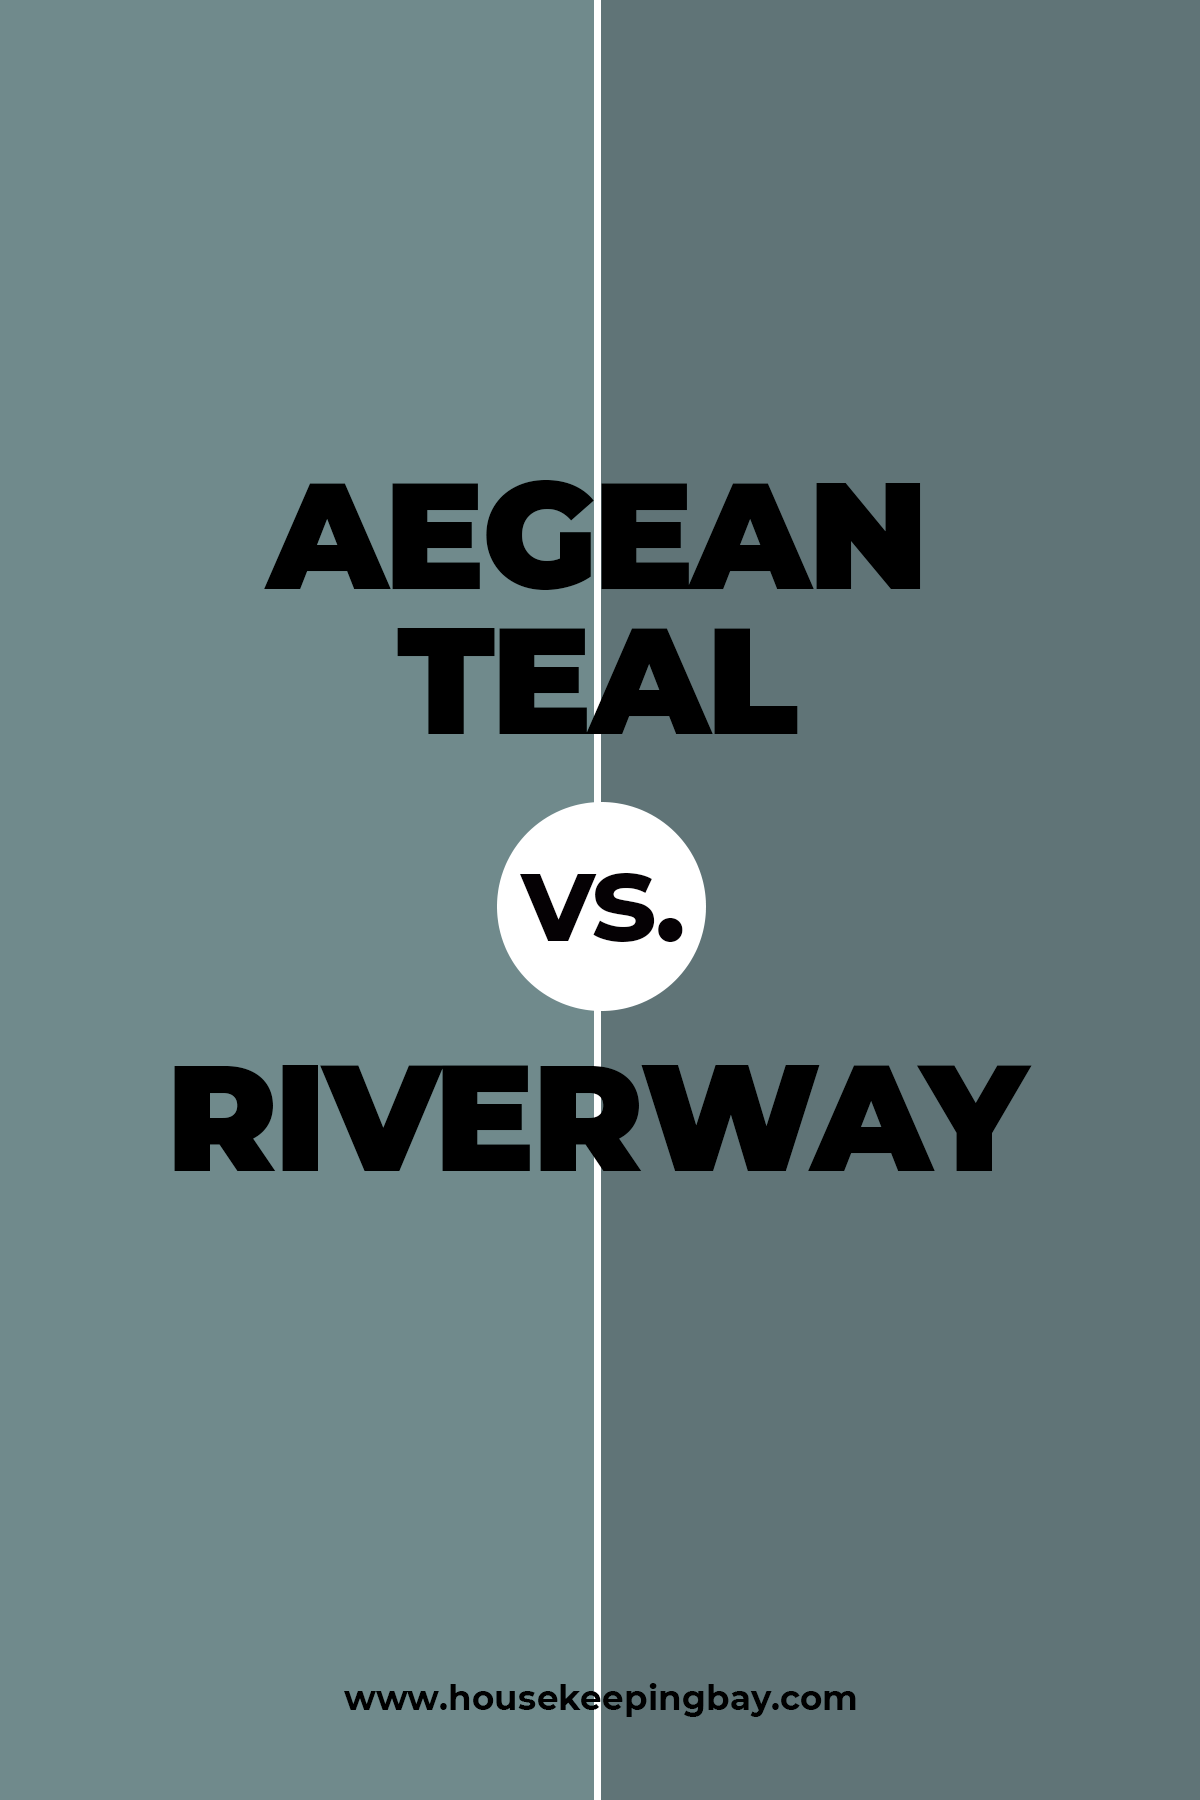 Aegean Teal vs Riverway